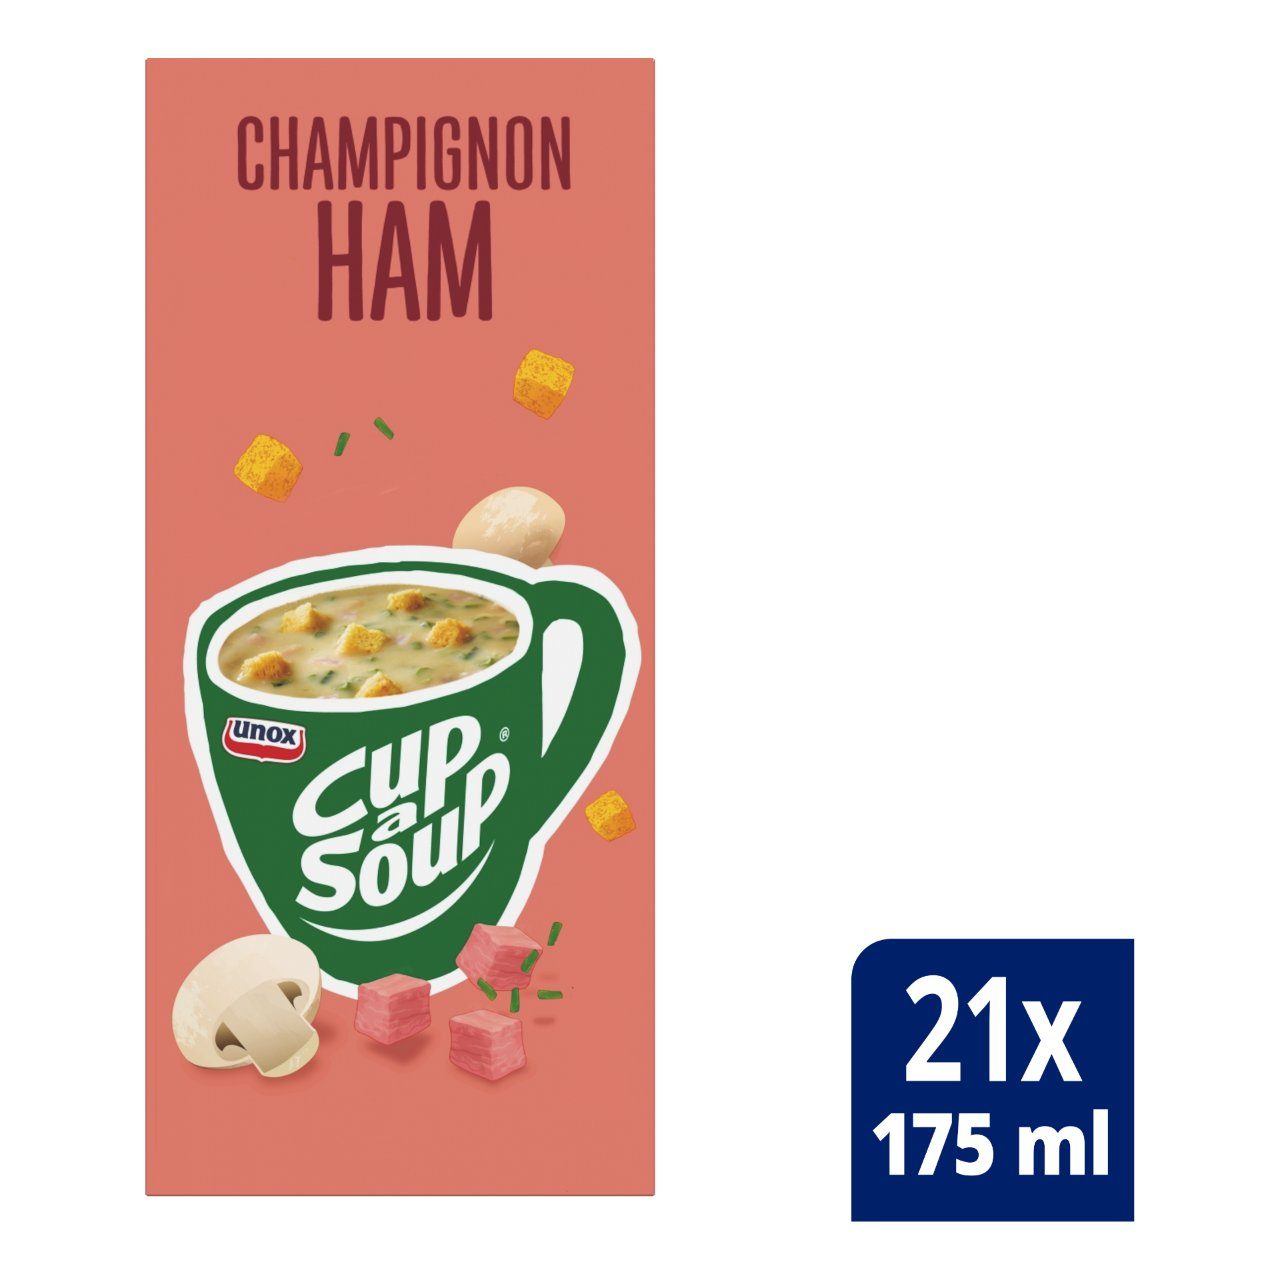 Champignon ham